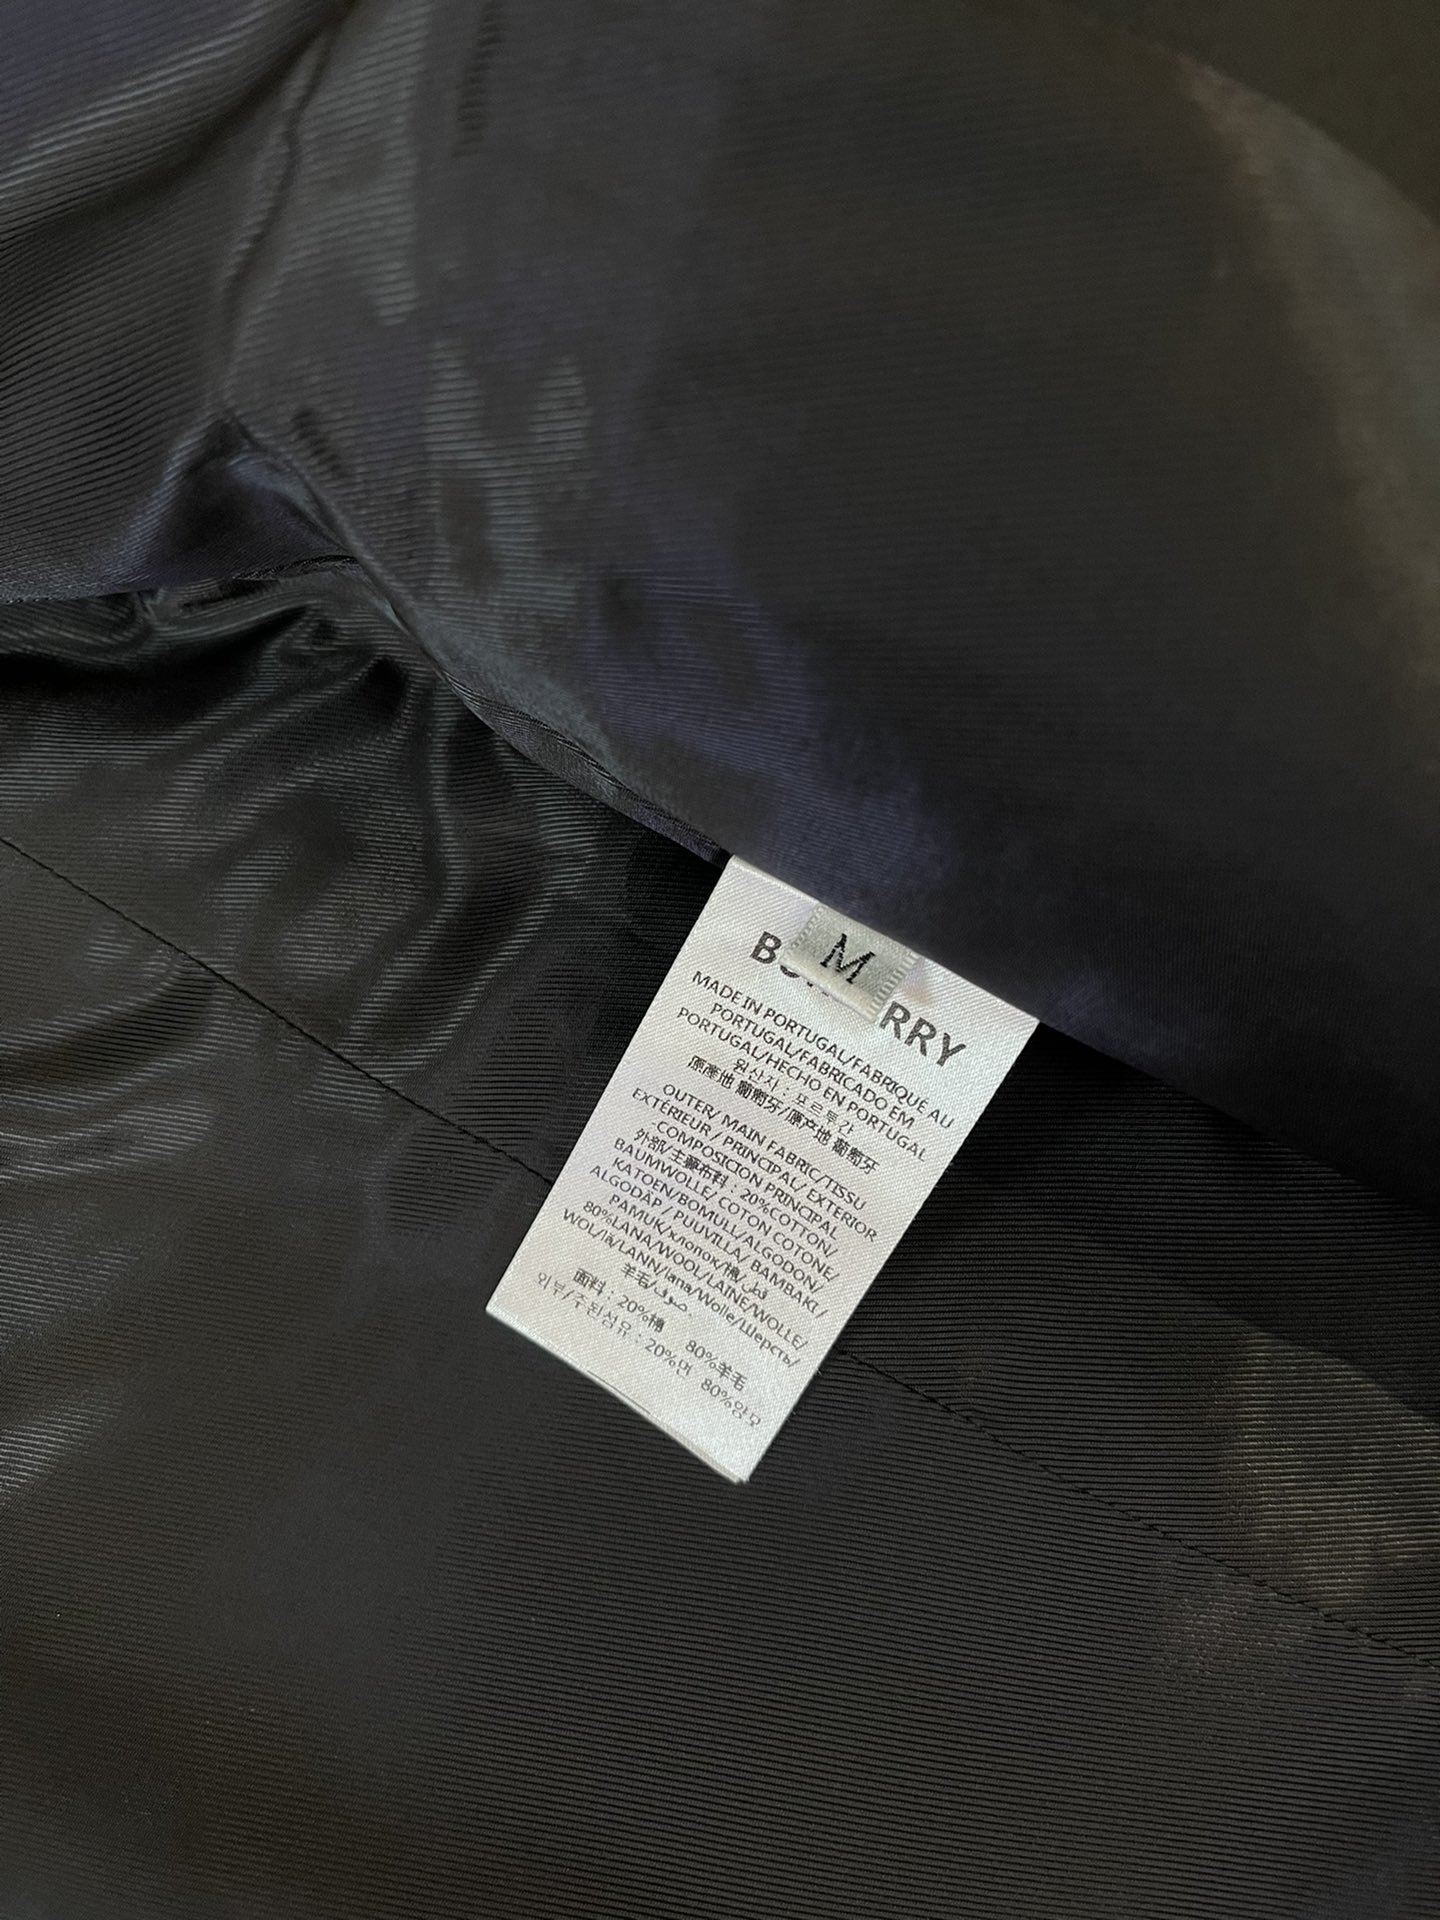 23683#新款西装外套Burberry专柜顶级货80%羊毛面料西装外套黑色蓝色SMLXL